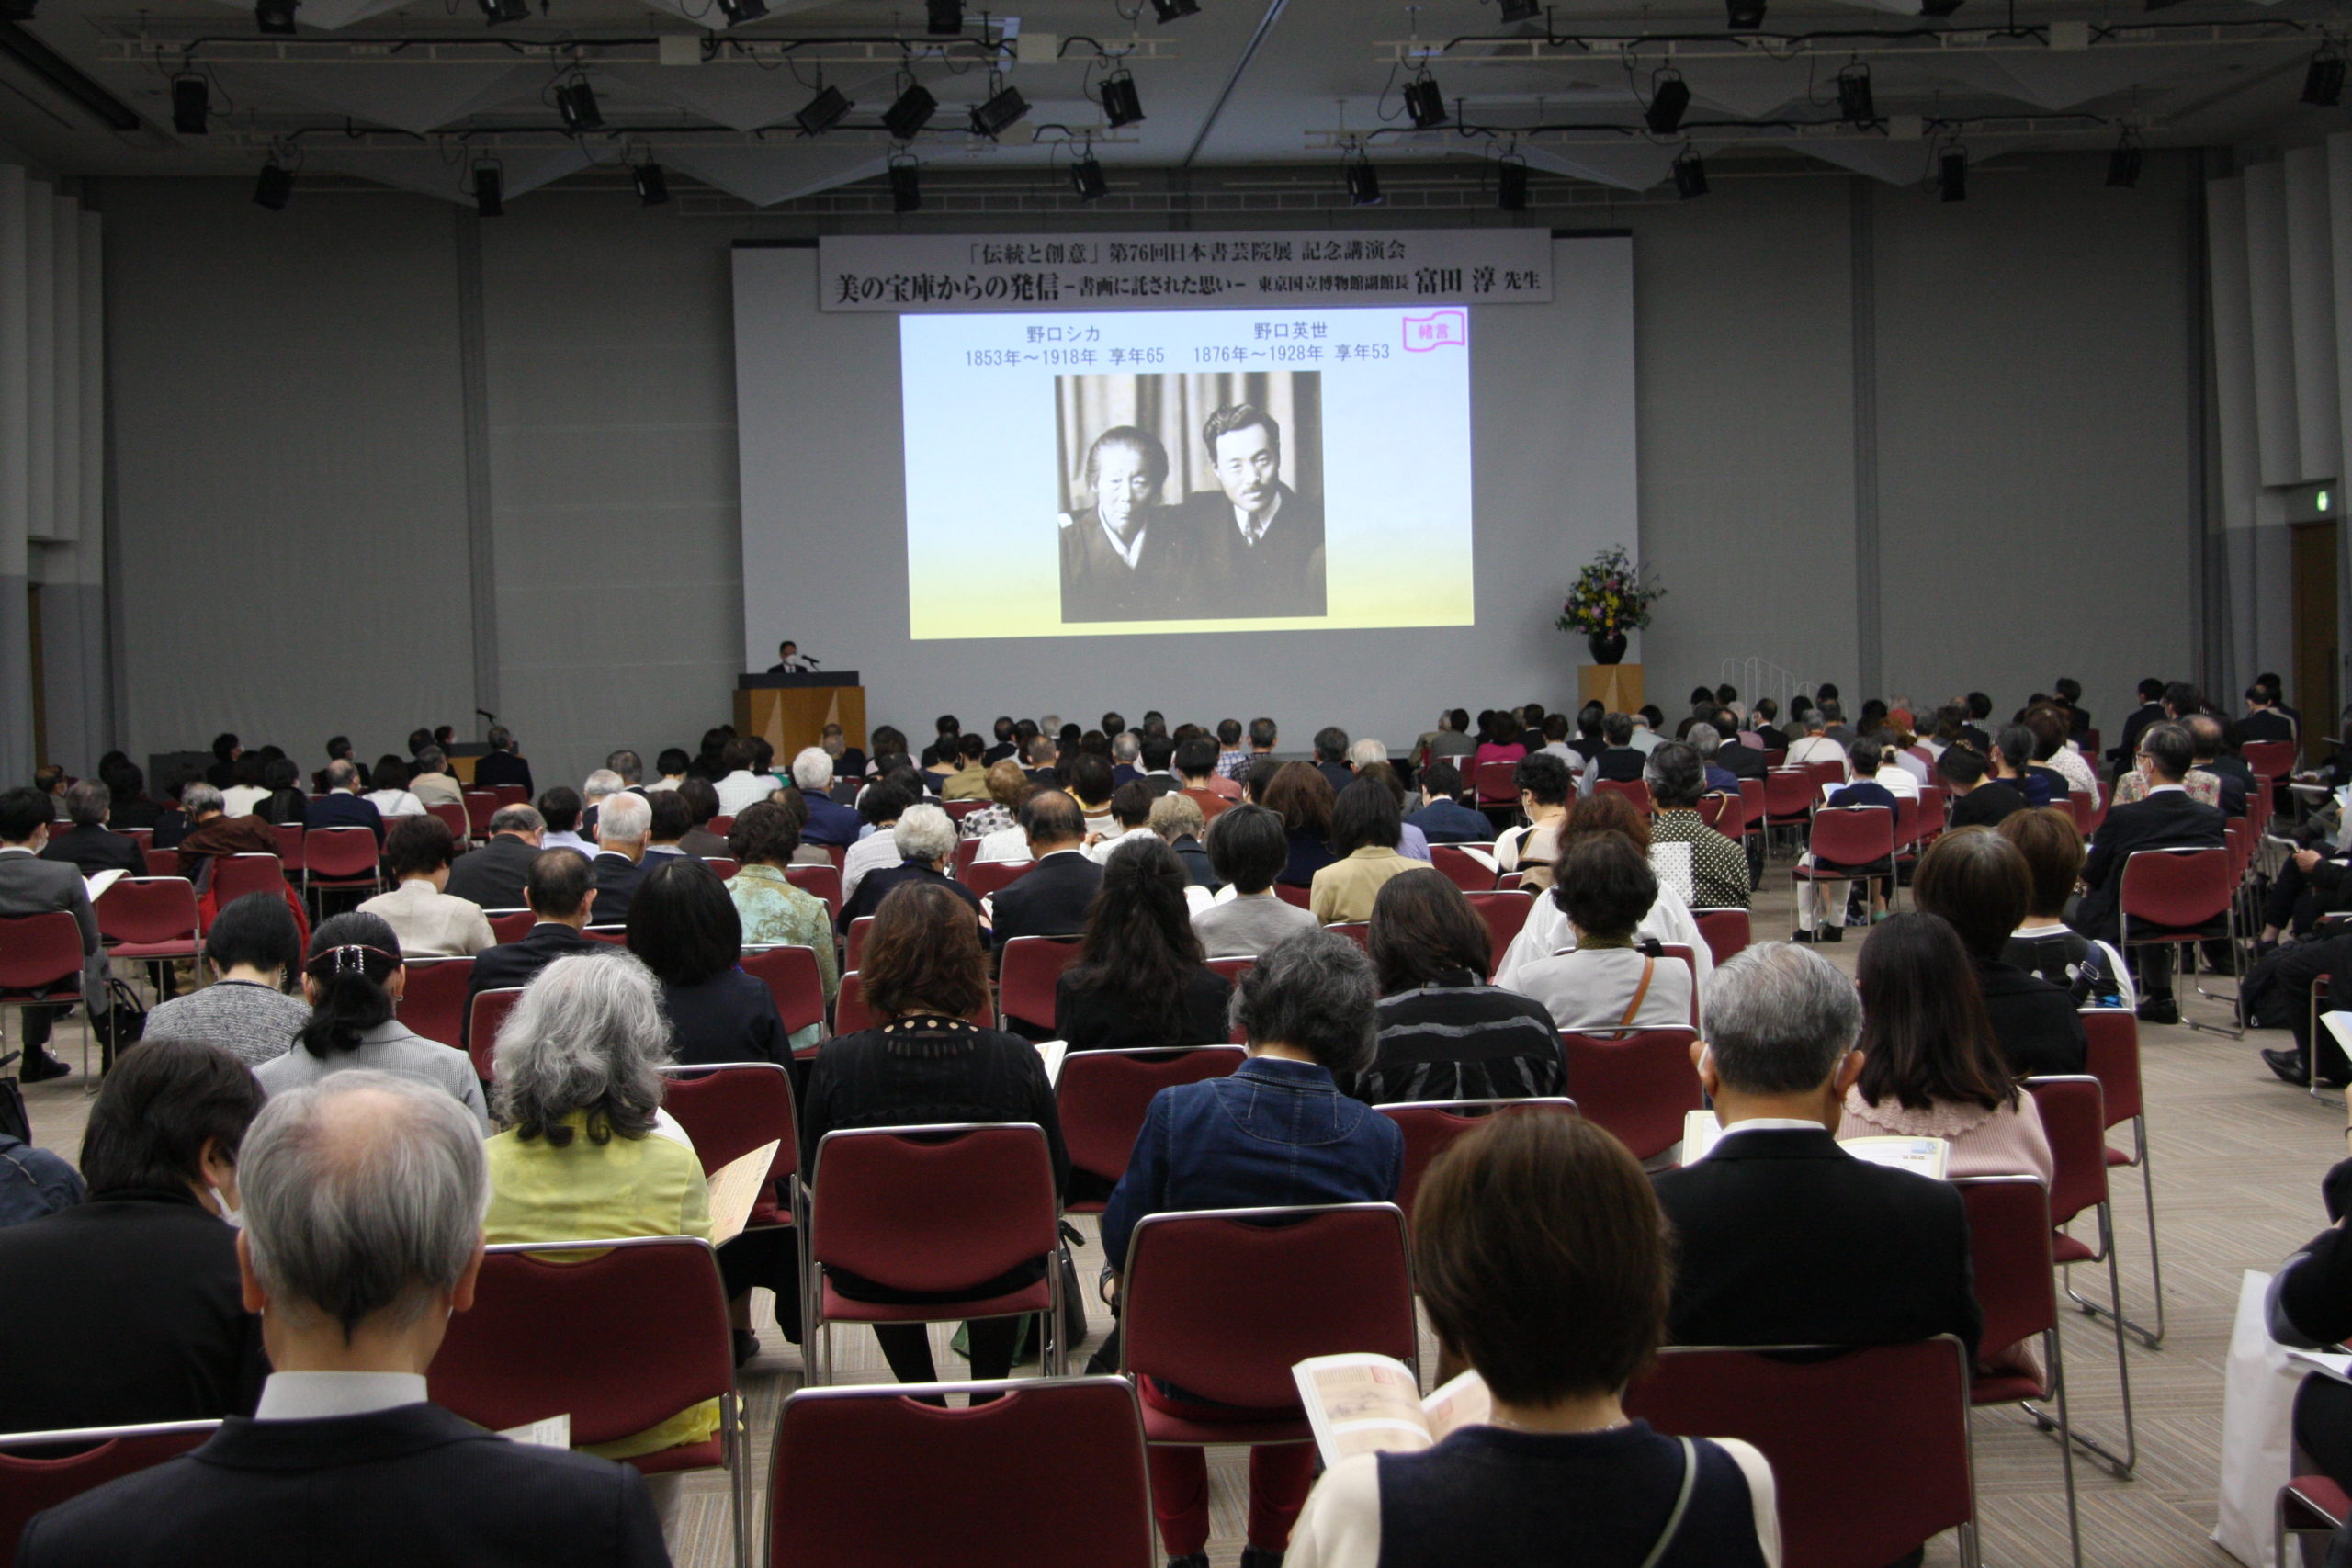 第76回 日本書芸院展 記念講演会 開催